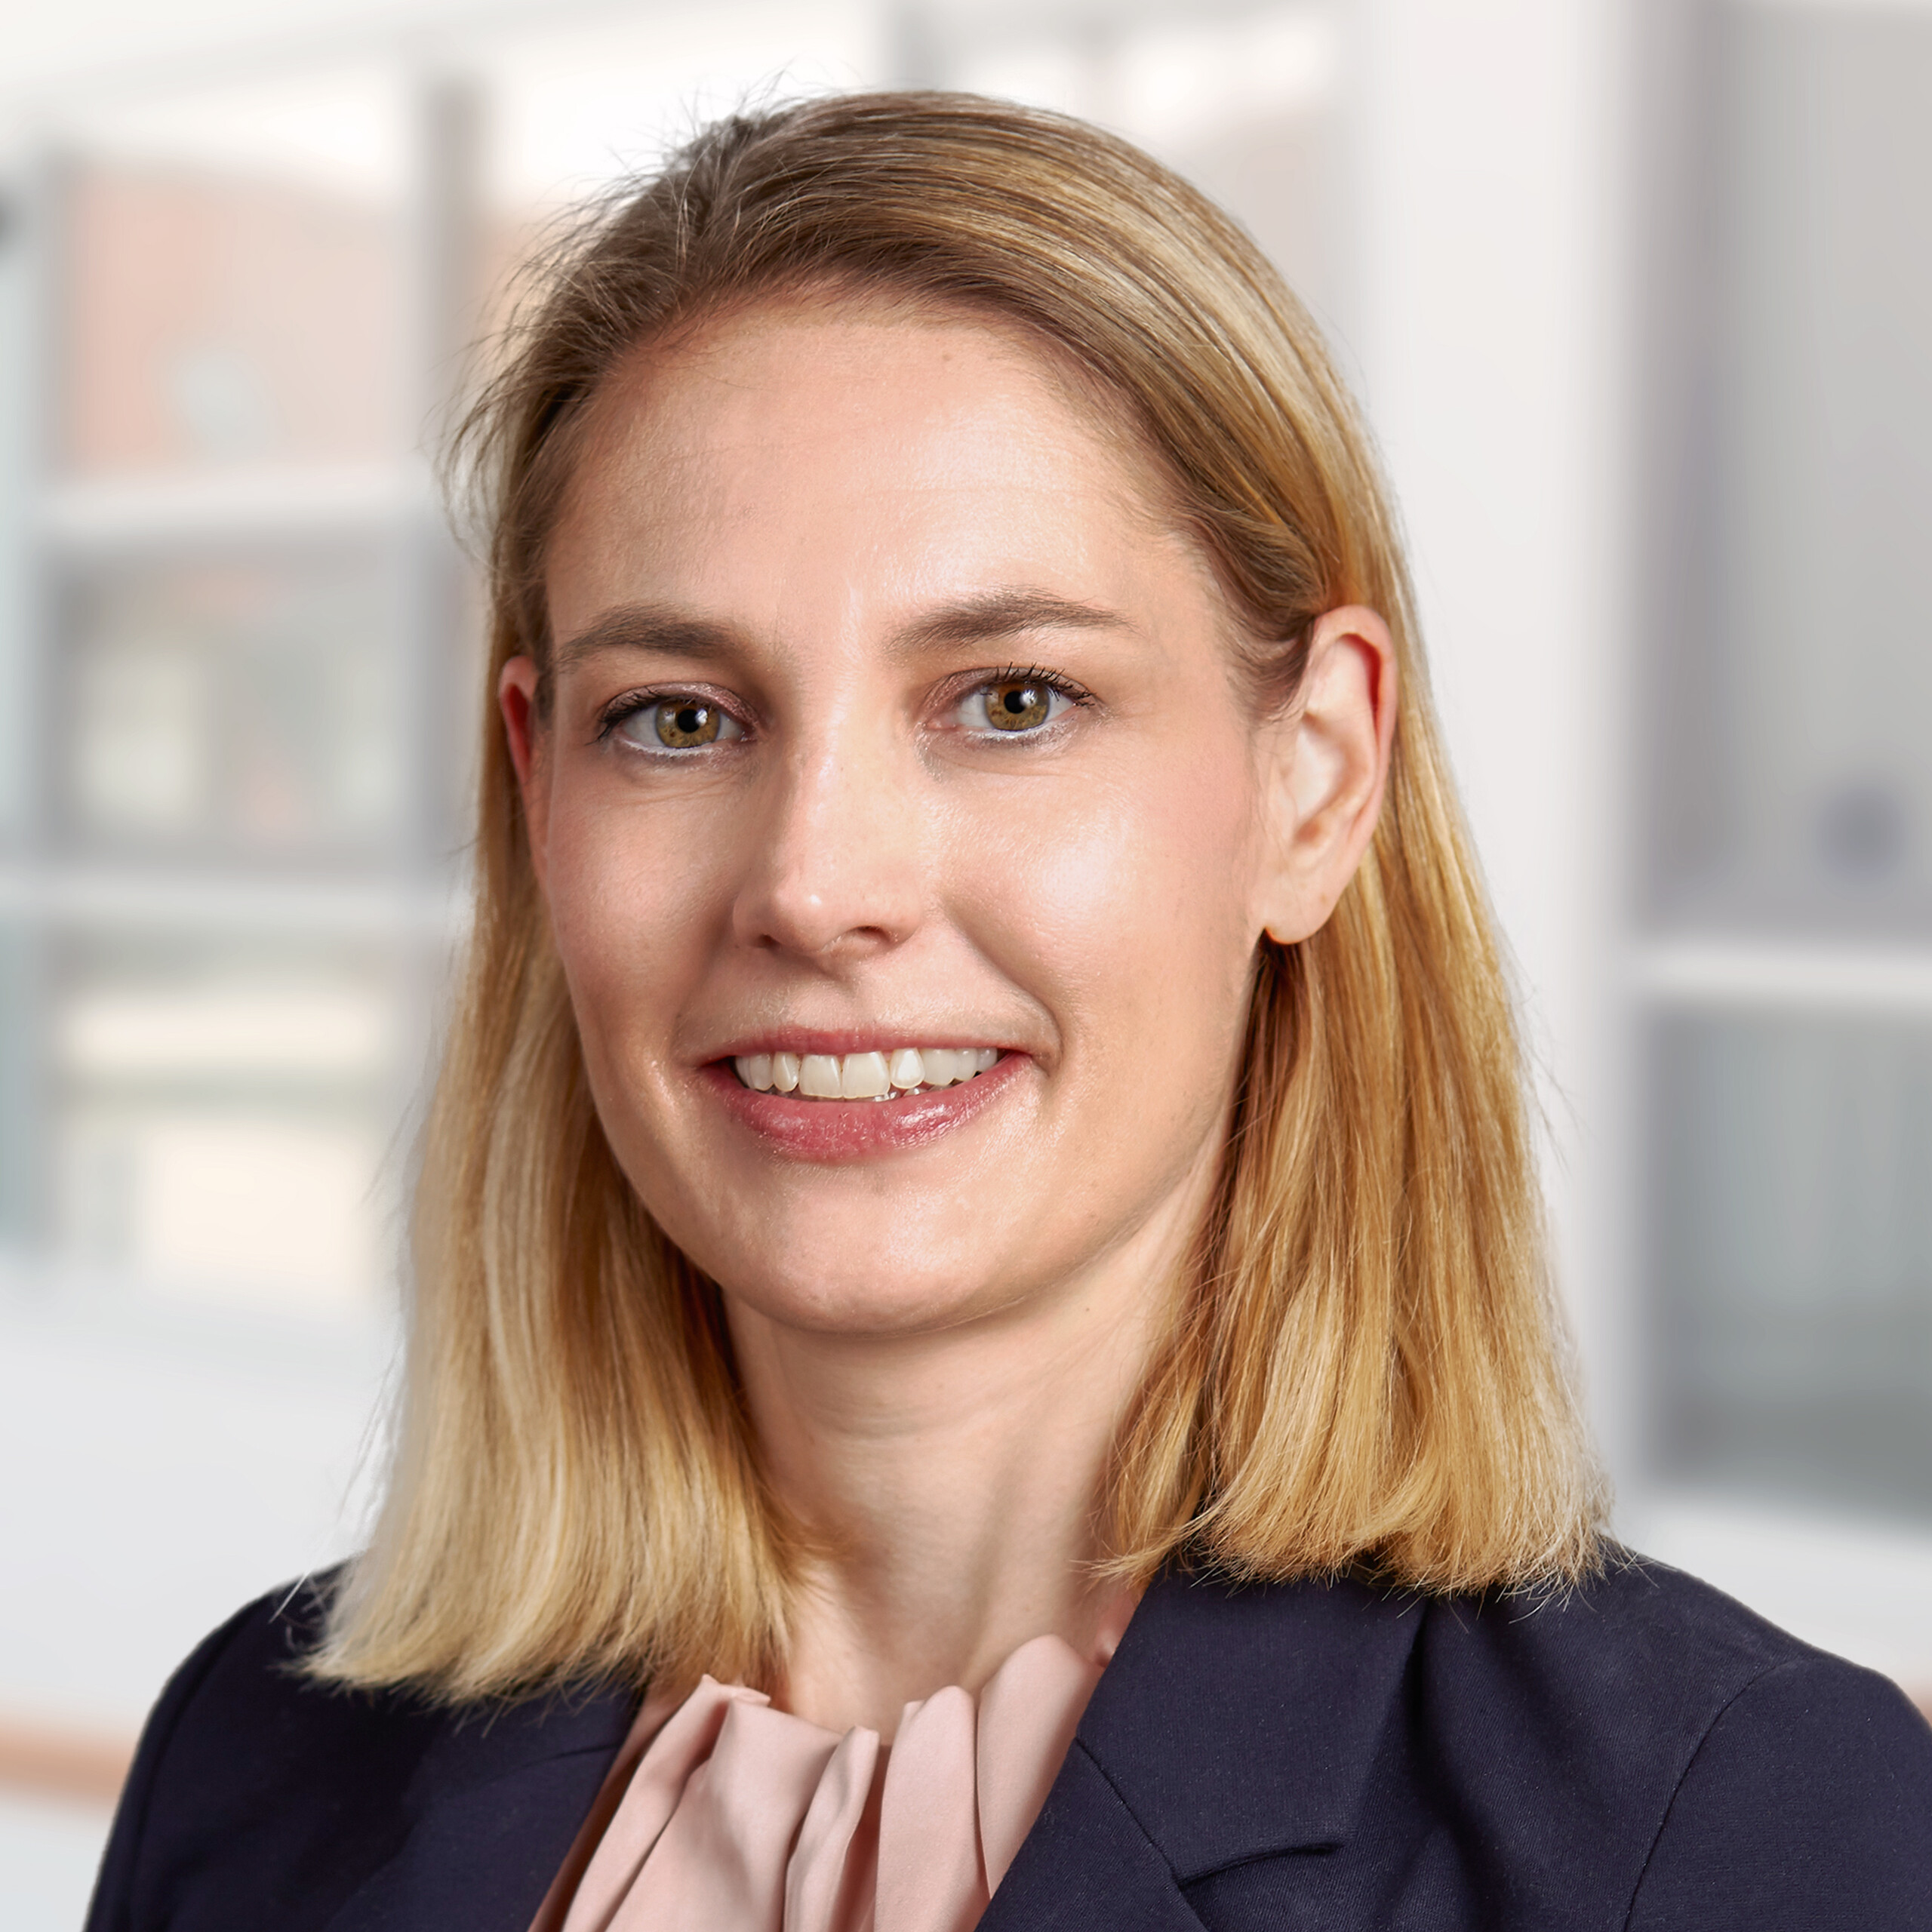 Nicole Pötsch, responsable des investissements et du développement stratégique pour l'Europe du Nord et l'Europe centrale chez Allianz Real Estate